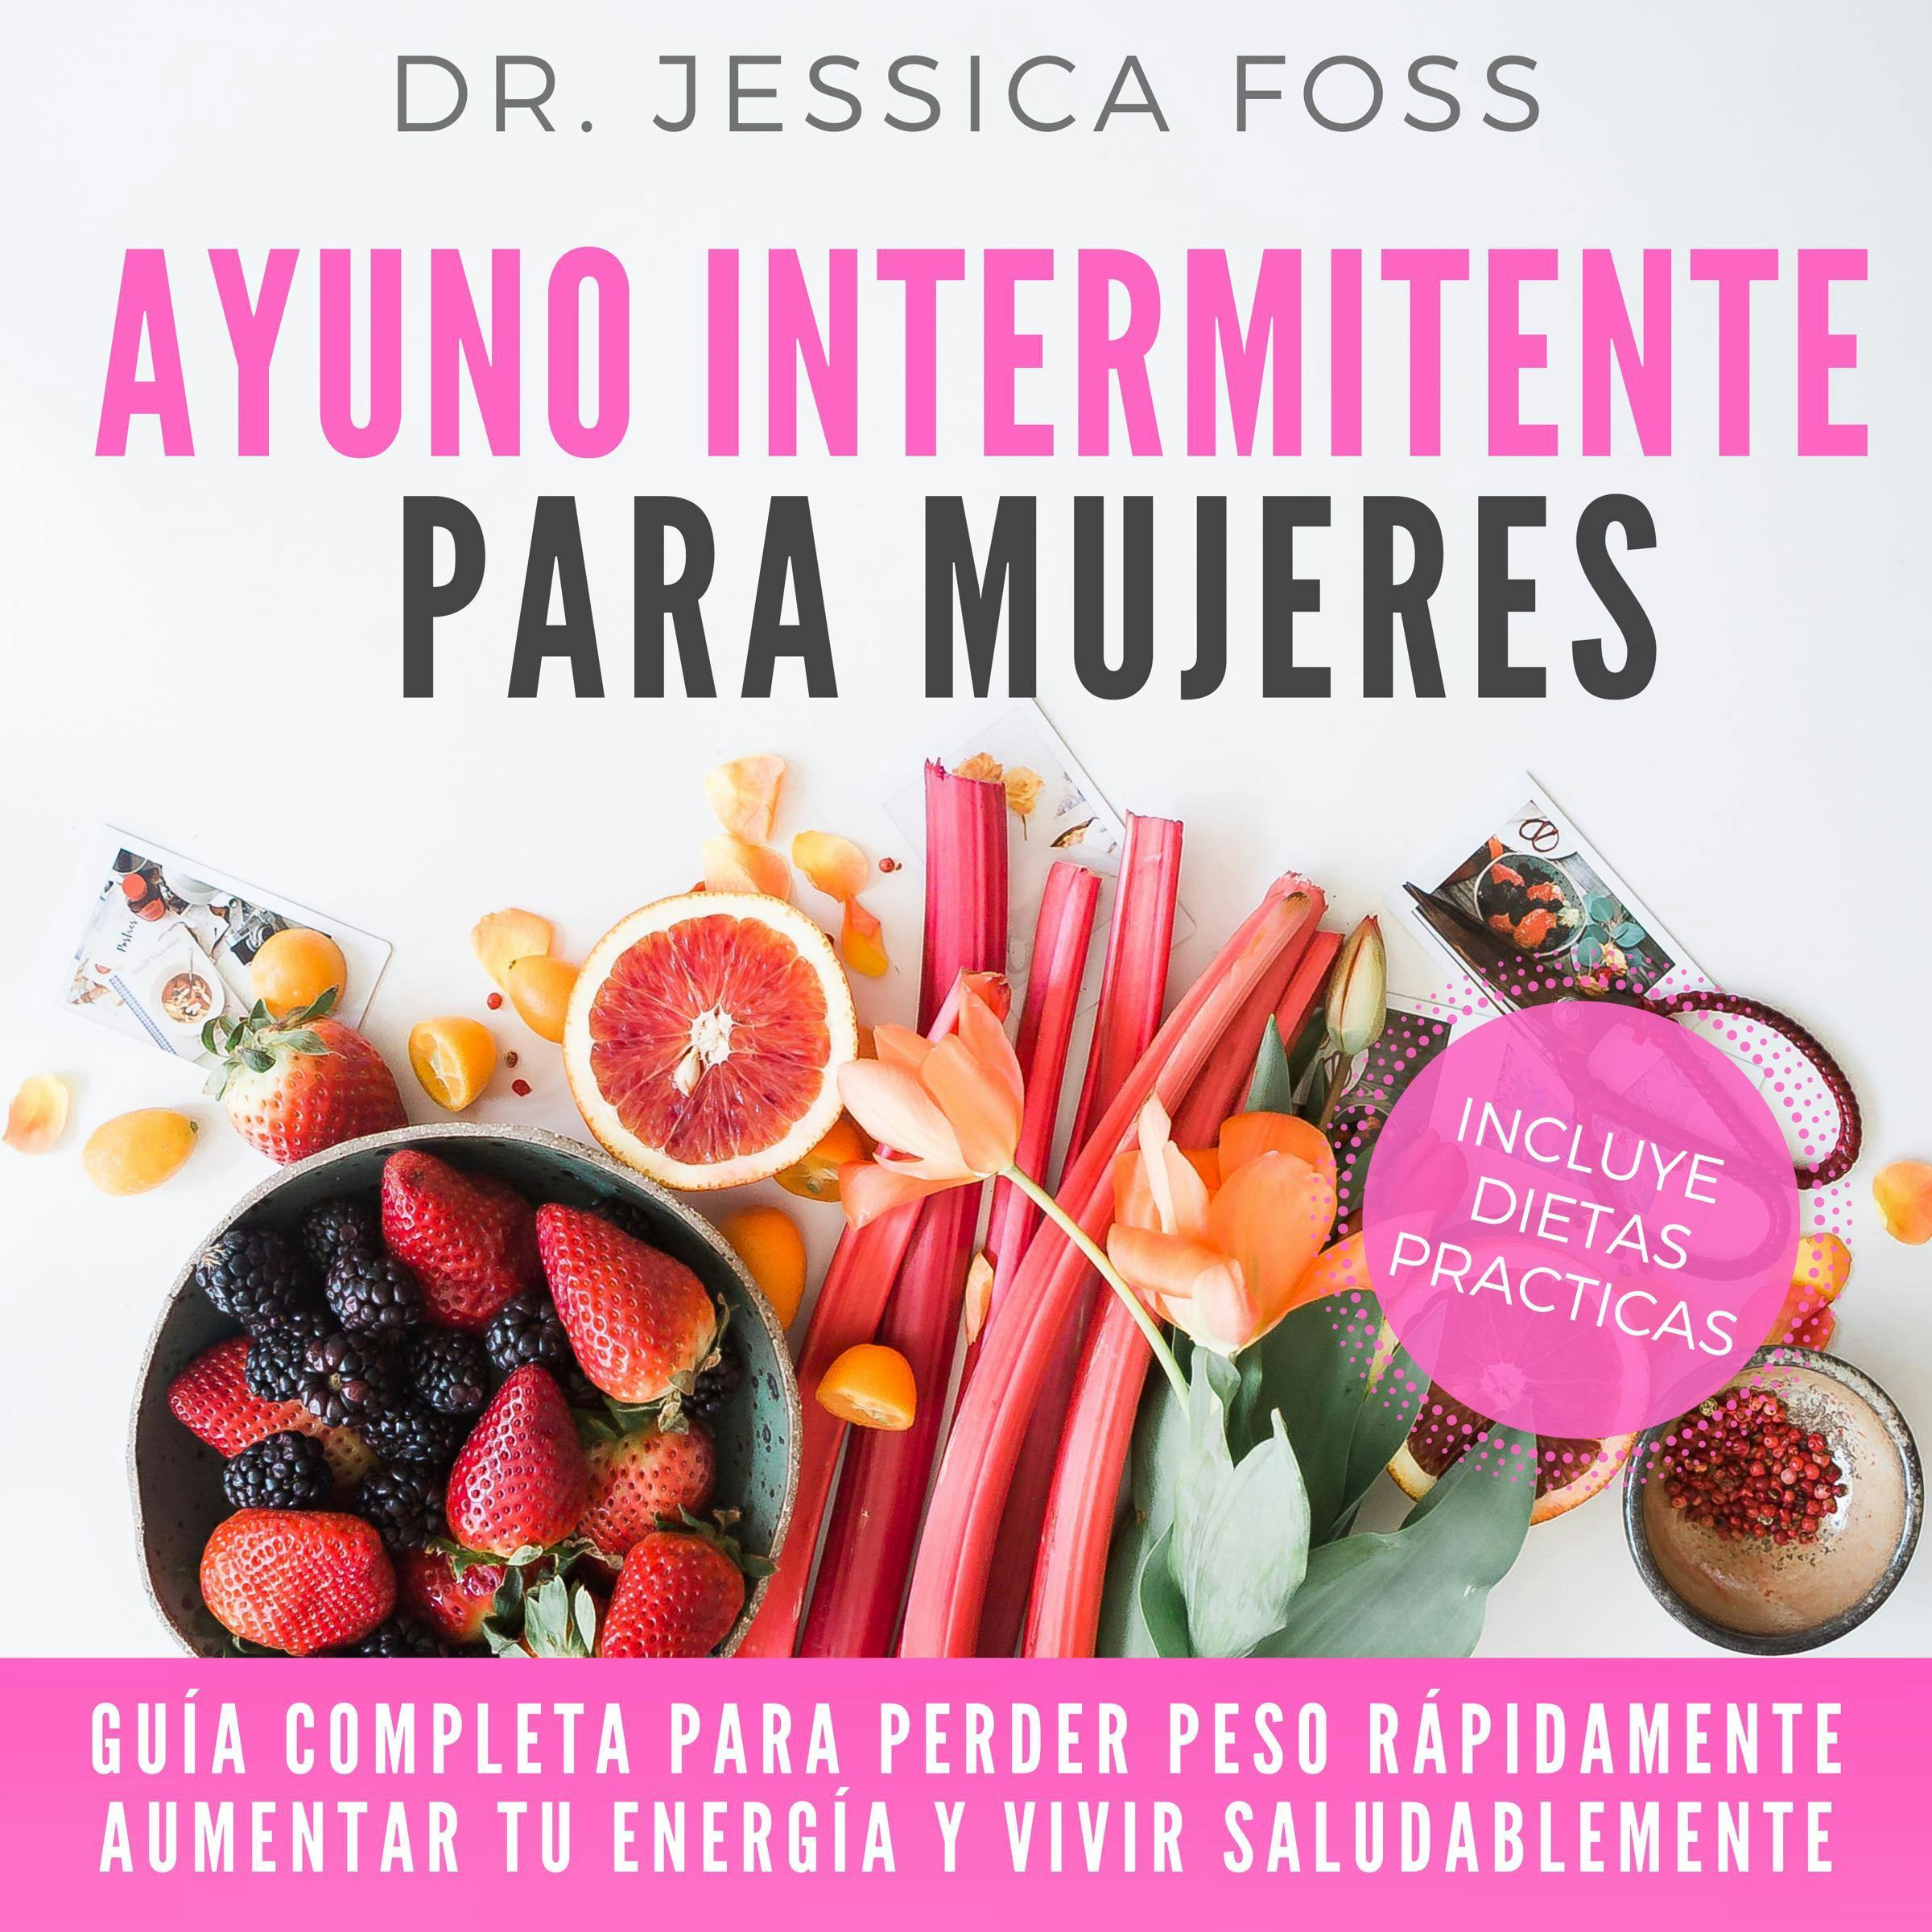 Ayuno Intermitente para Mujeres: Guía completa para perder peso rápidamente, aumentar tu energía y vivir saludablemente - Dr Jessica Foss